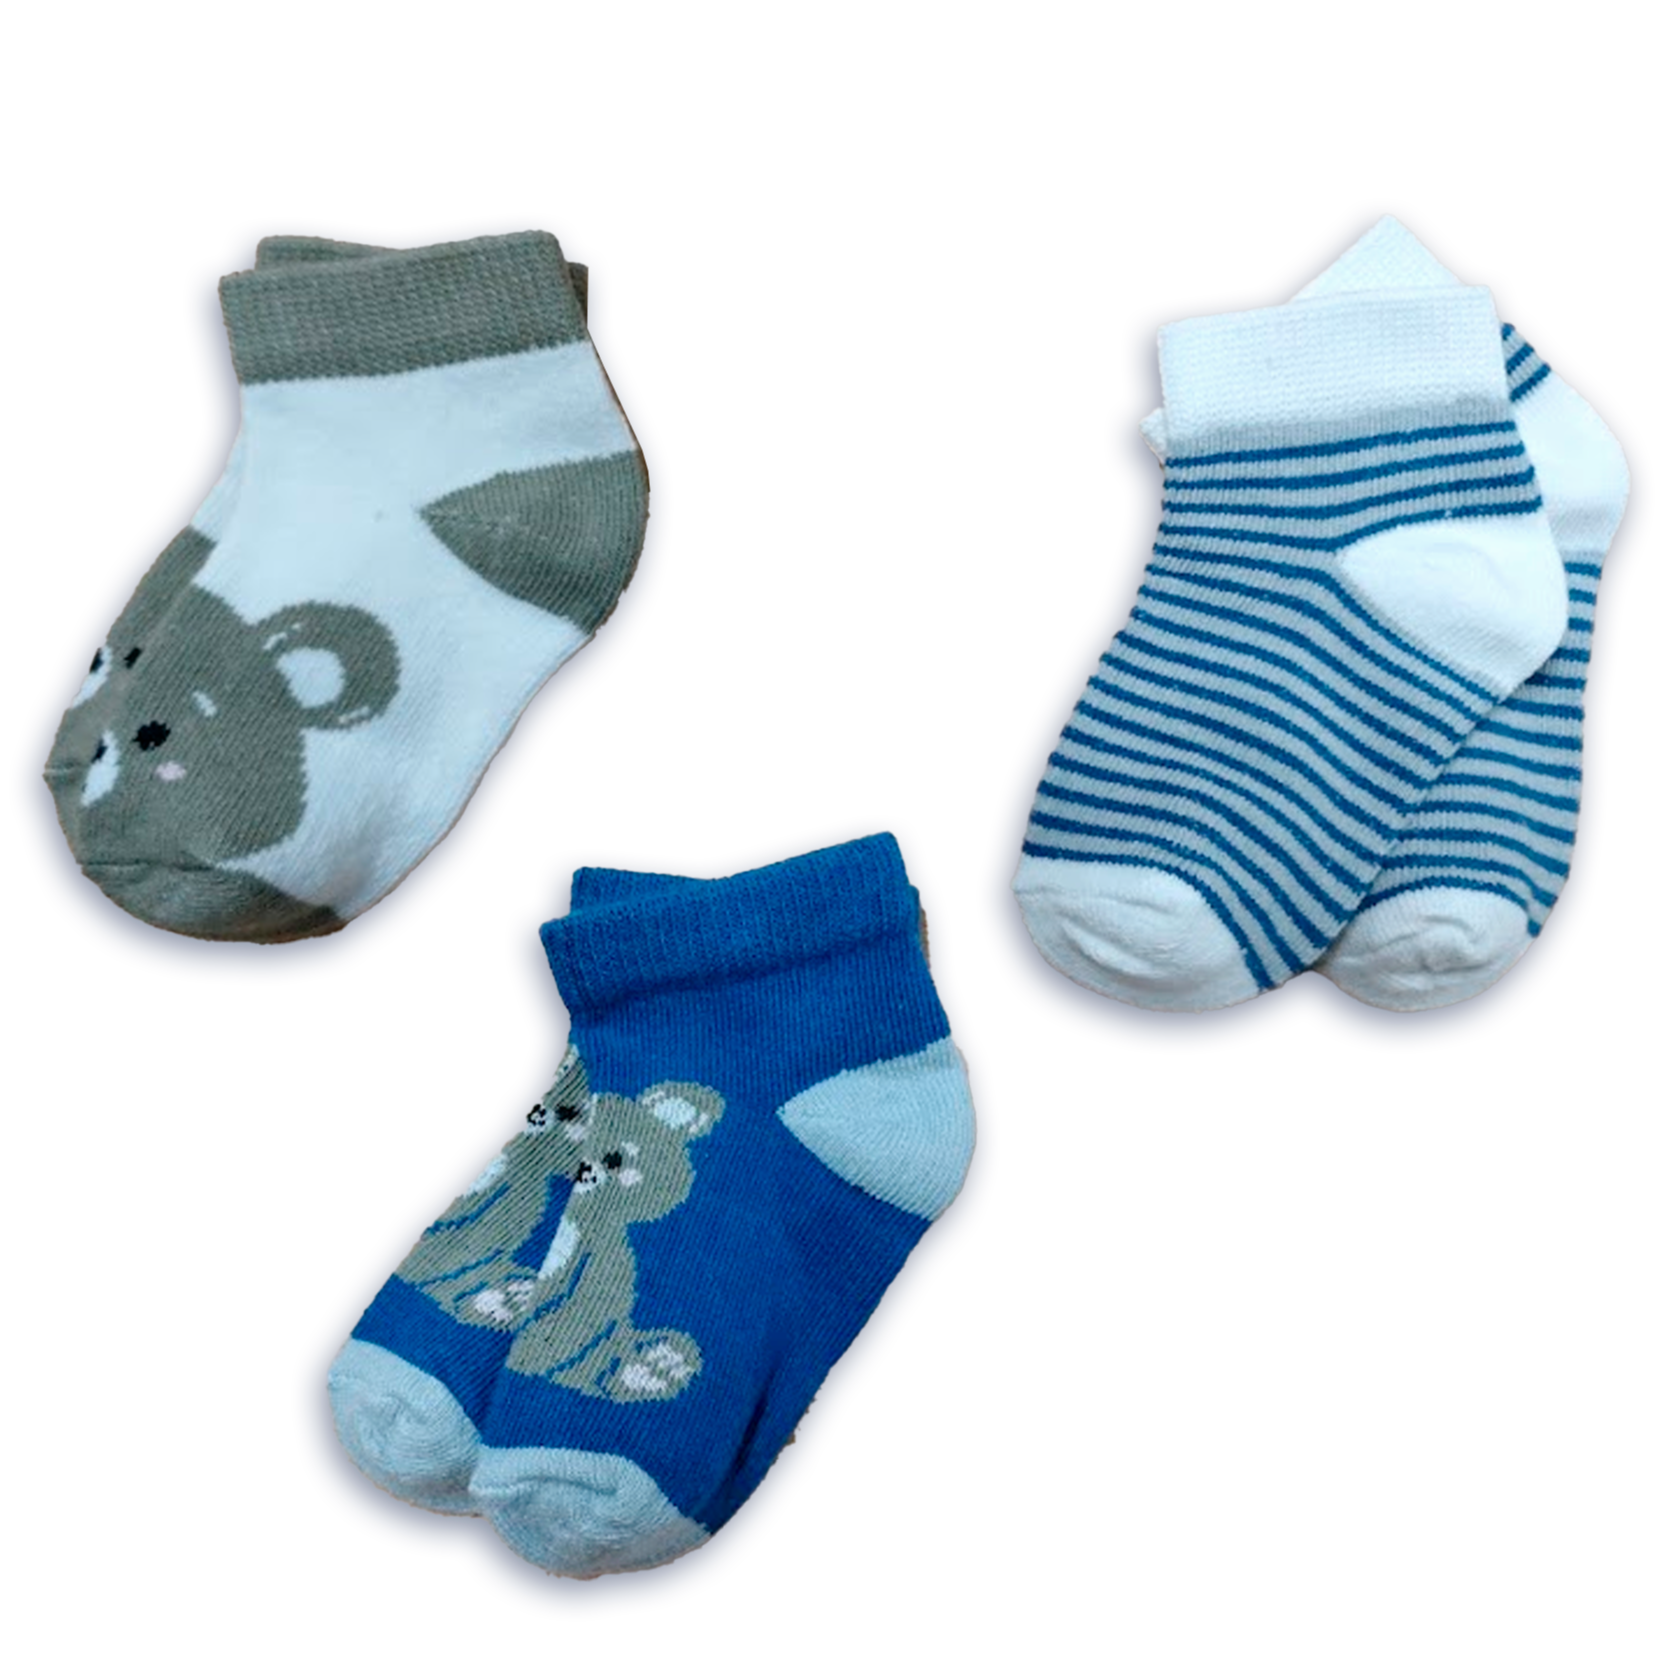 Pack de 2 pares de calcetines bajos para niña retro azul y verde Dim Sport